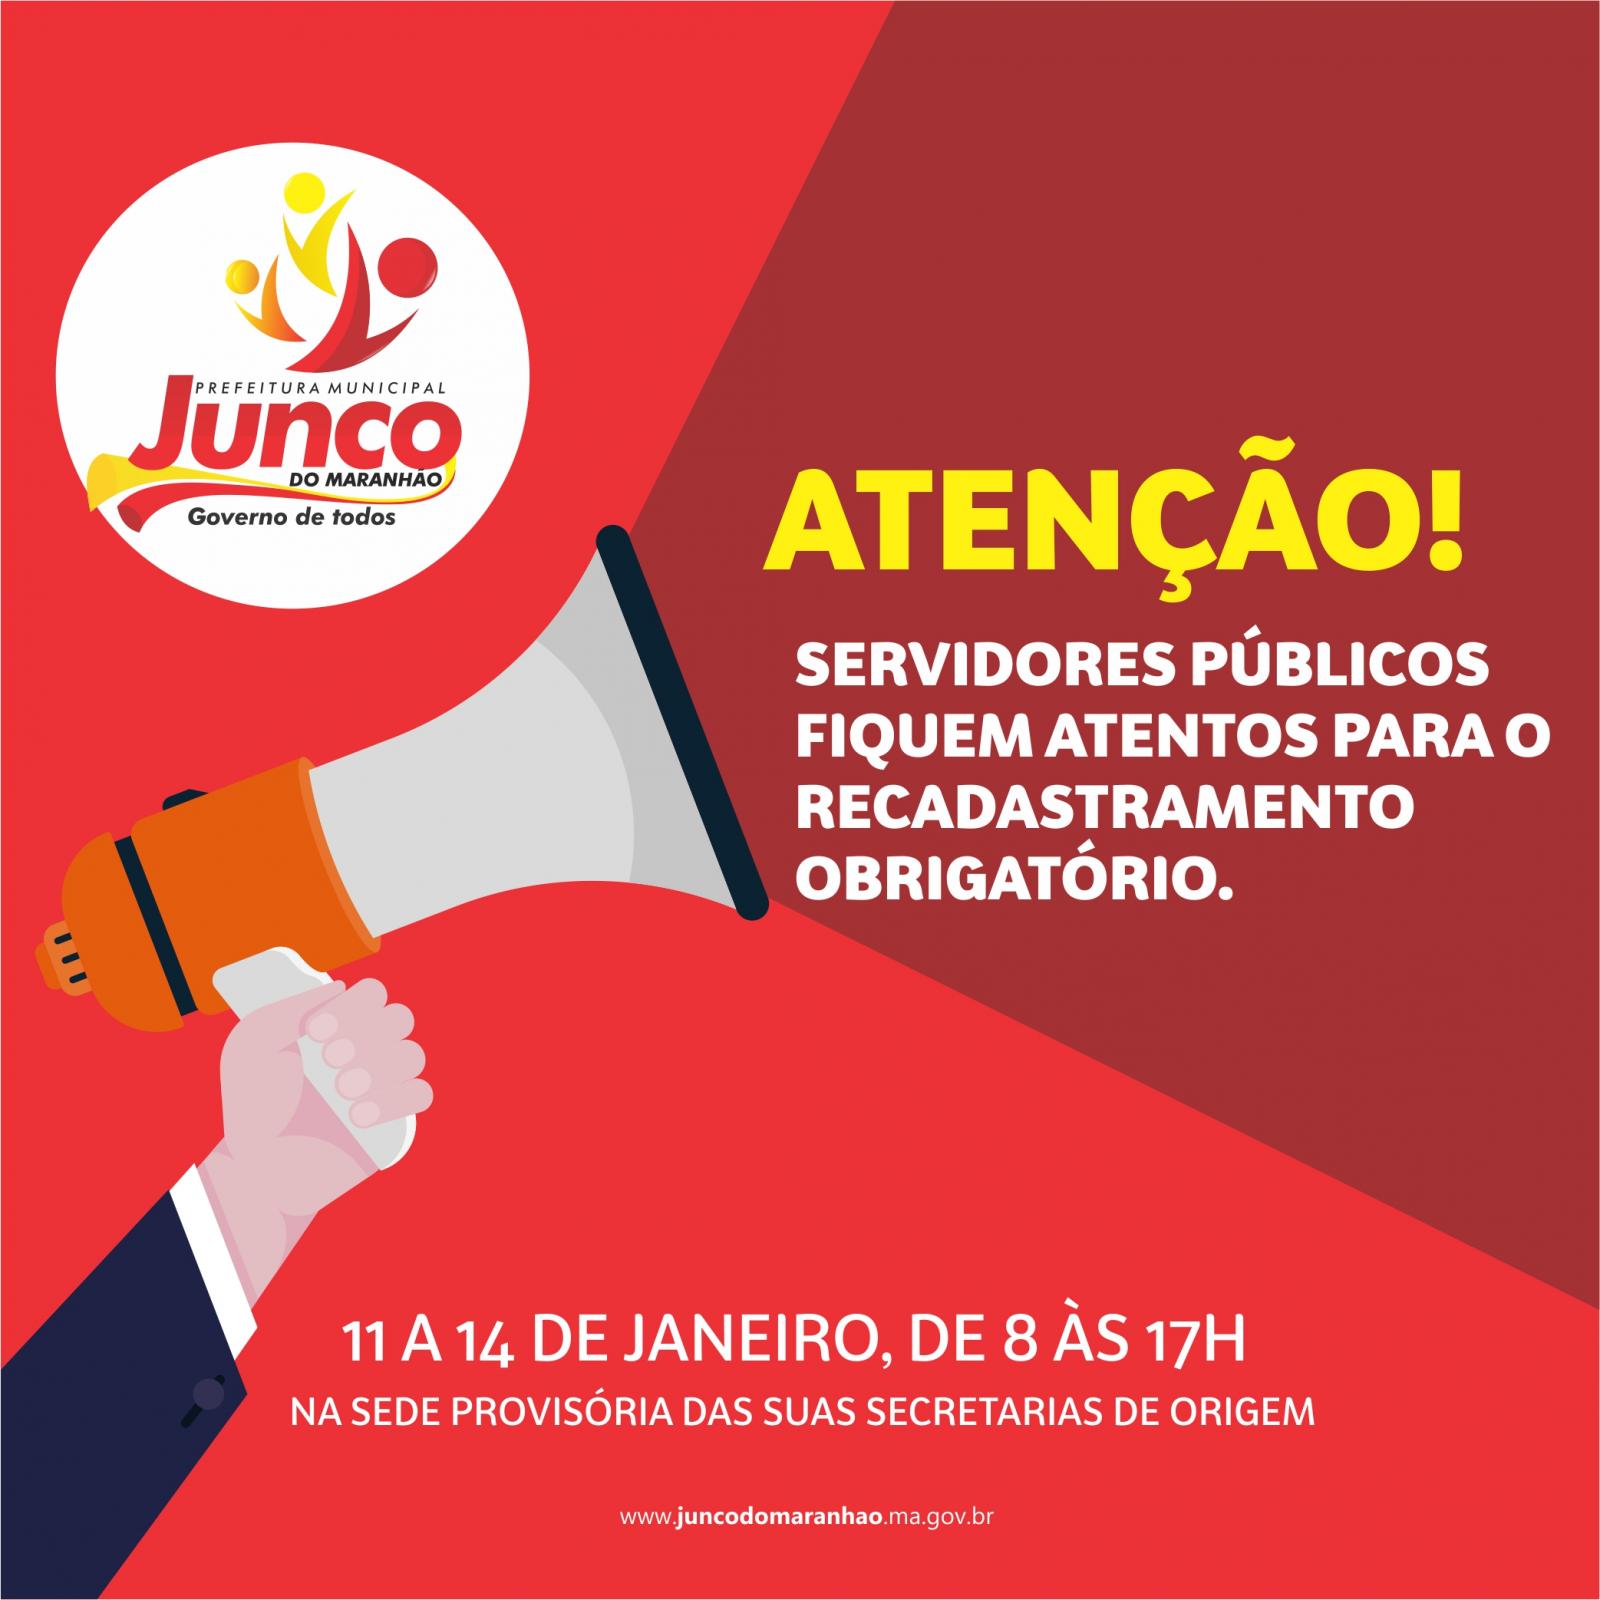 Começa dia 11 o recadastramento dos servidores públicos de Junco do Maranhão